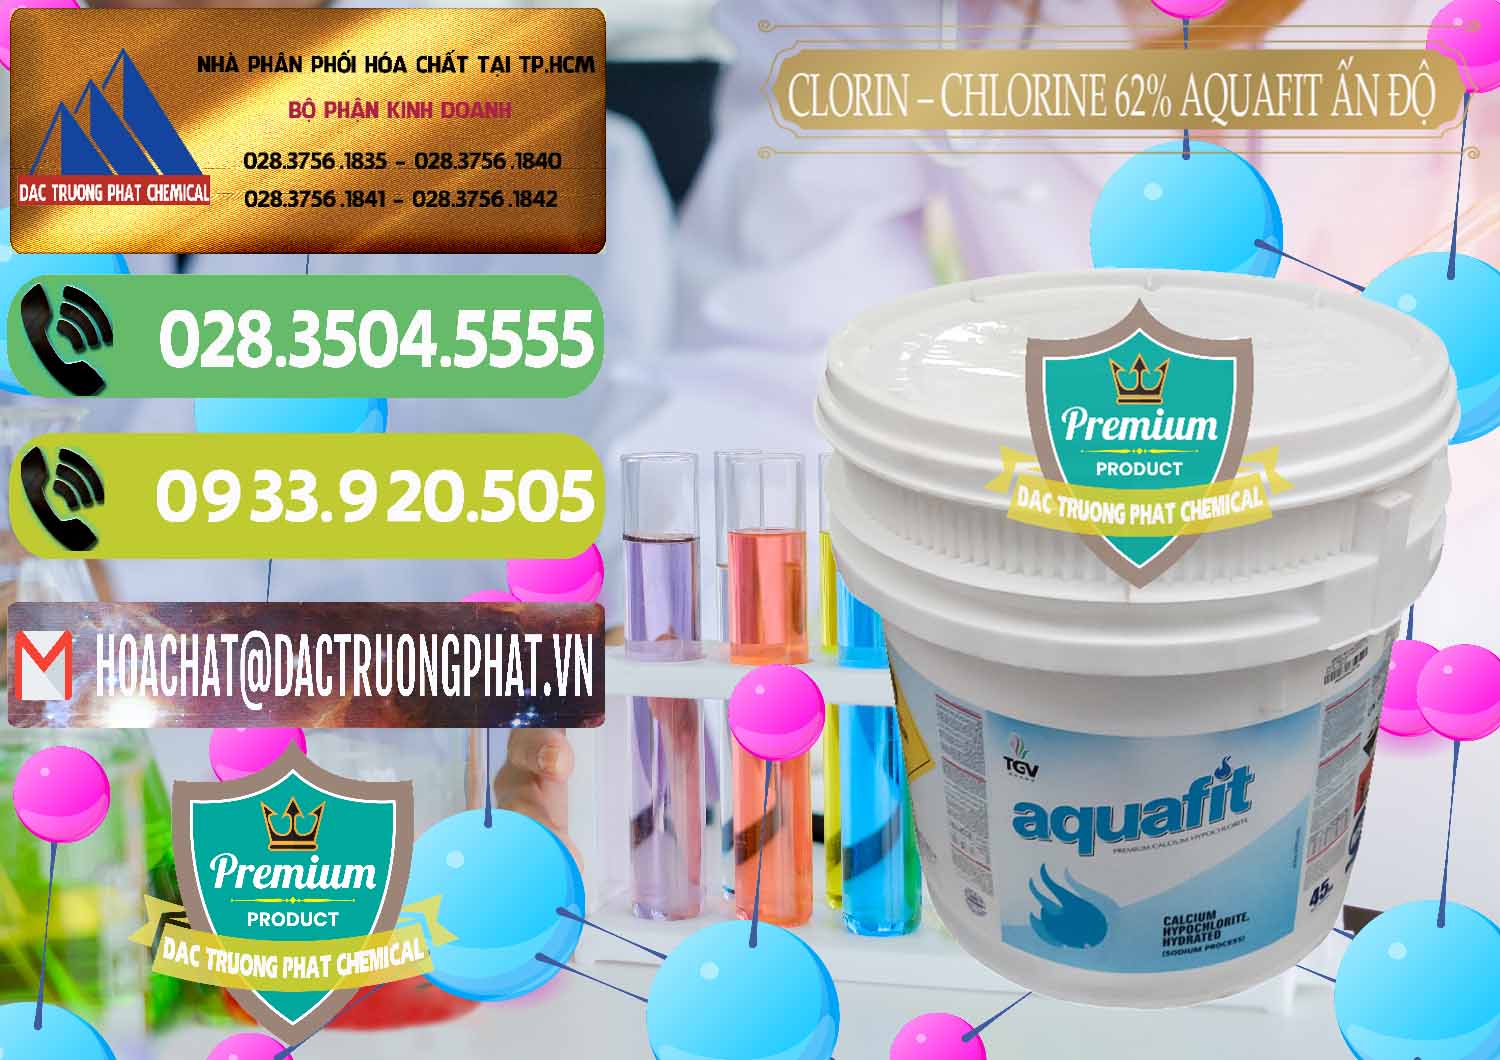 Bán _ cung cấp Clorin - Chlorine 62% Aquafit Thùng Lùn Ấn Độ India - 0057 - Cty phân phối và cung cấp hóa chất tại TP.HCM - hoachatmientay.vn